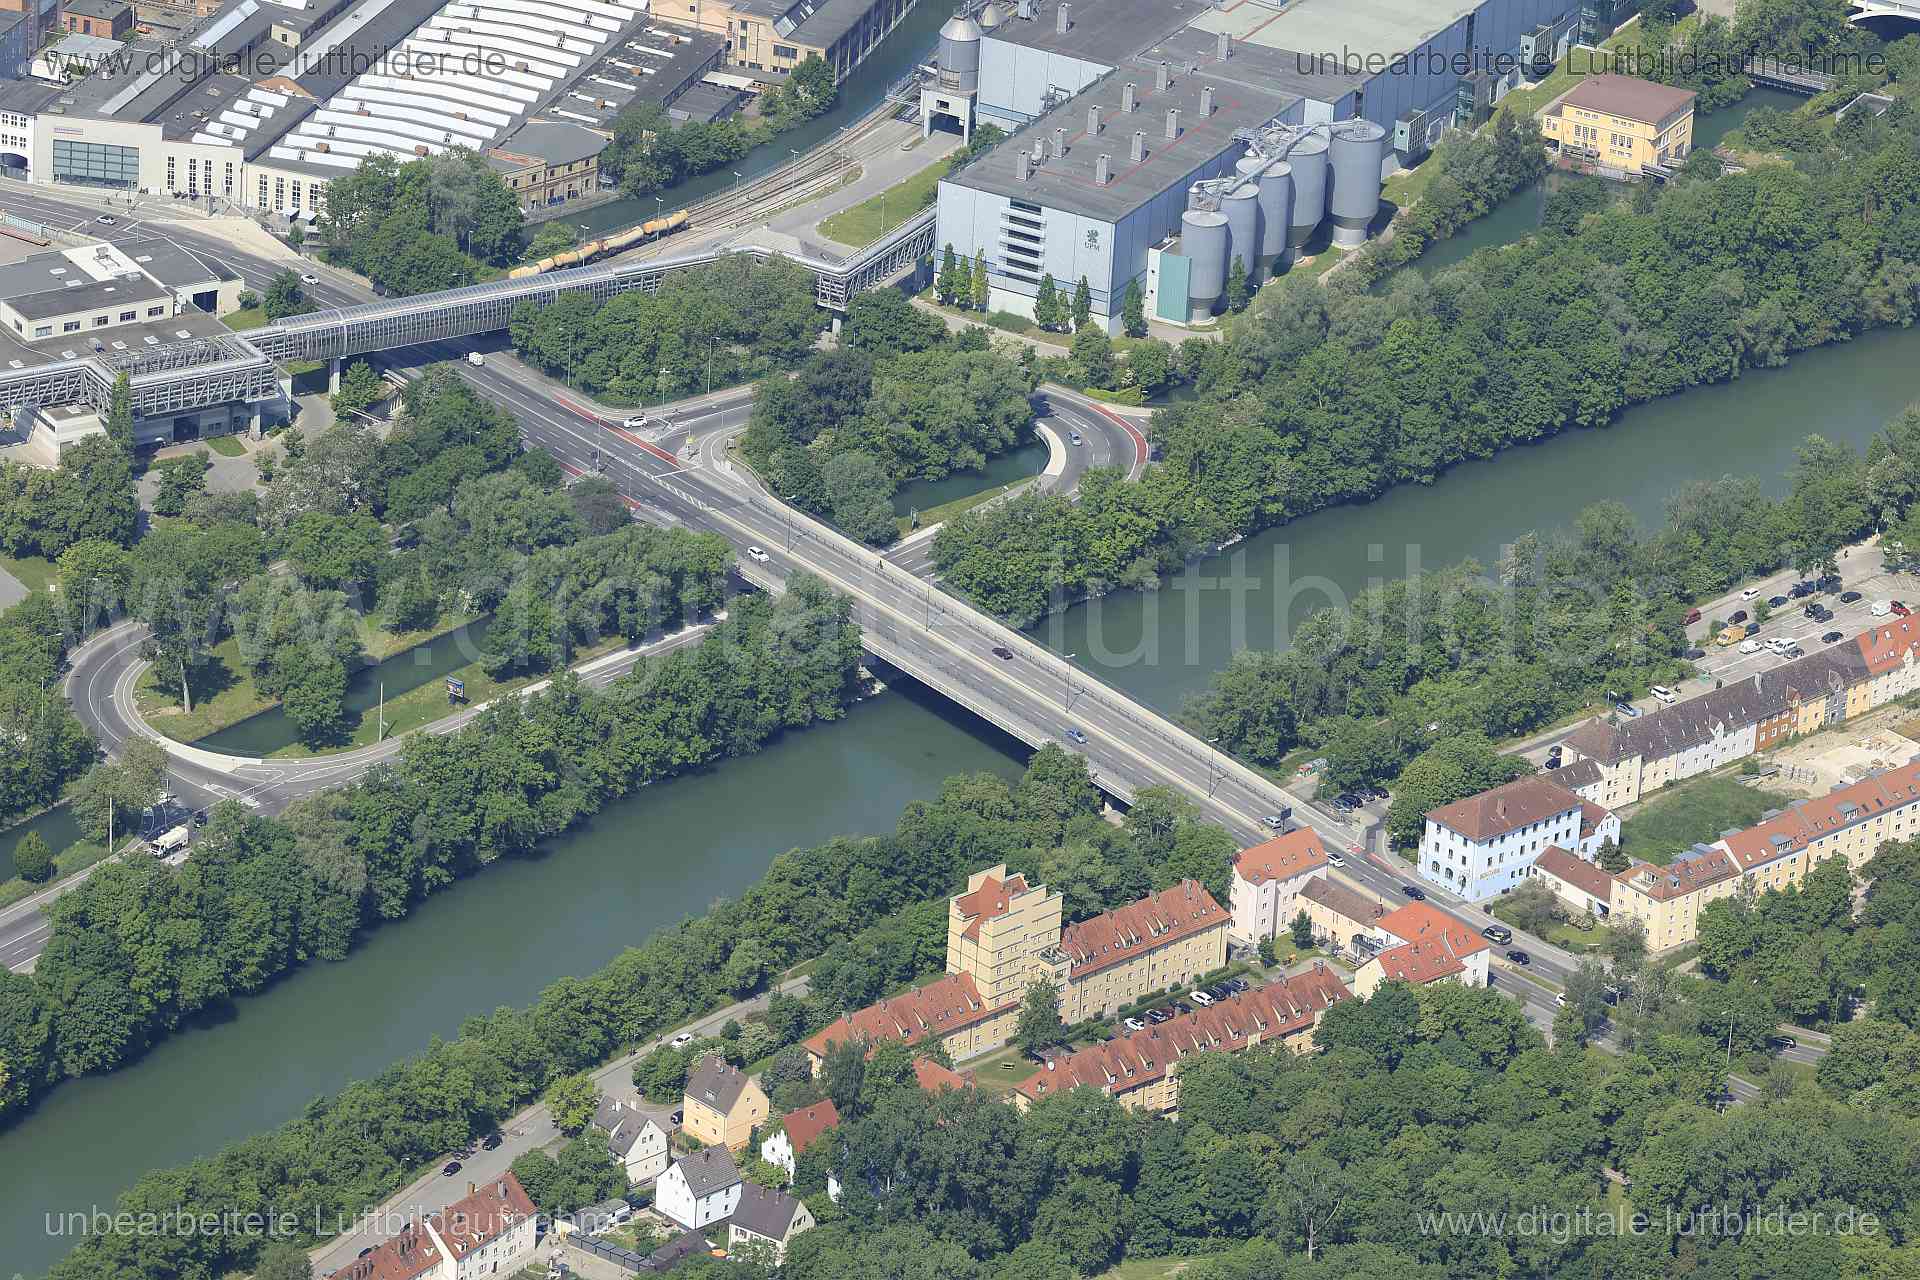 Luftbild - MAN-Brücke, Ort: Augsburg, Tags: MAN-Brücke, Brücke, Lech, ...